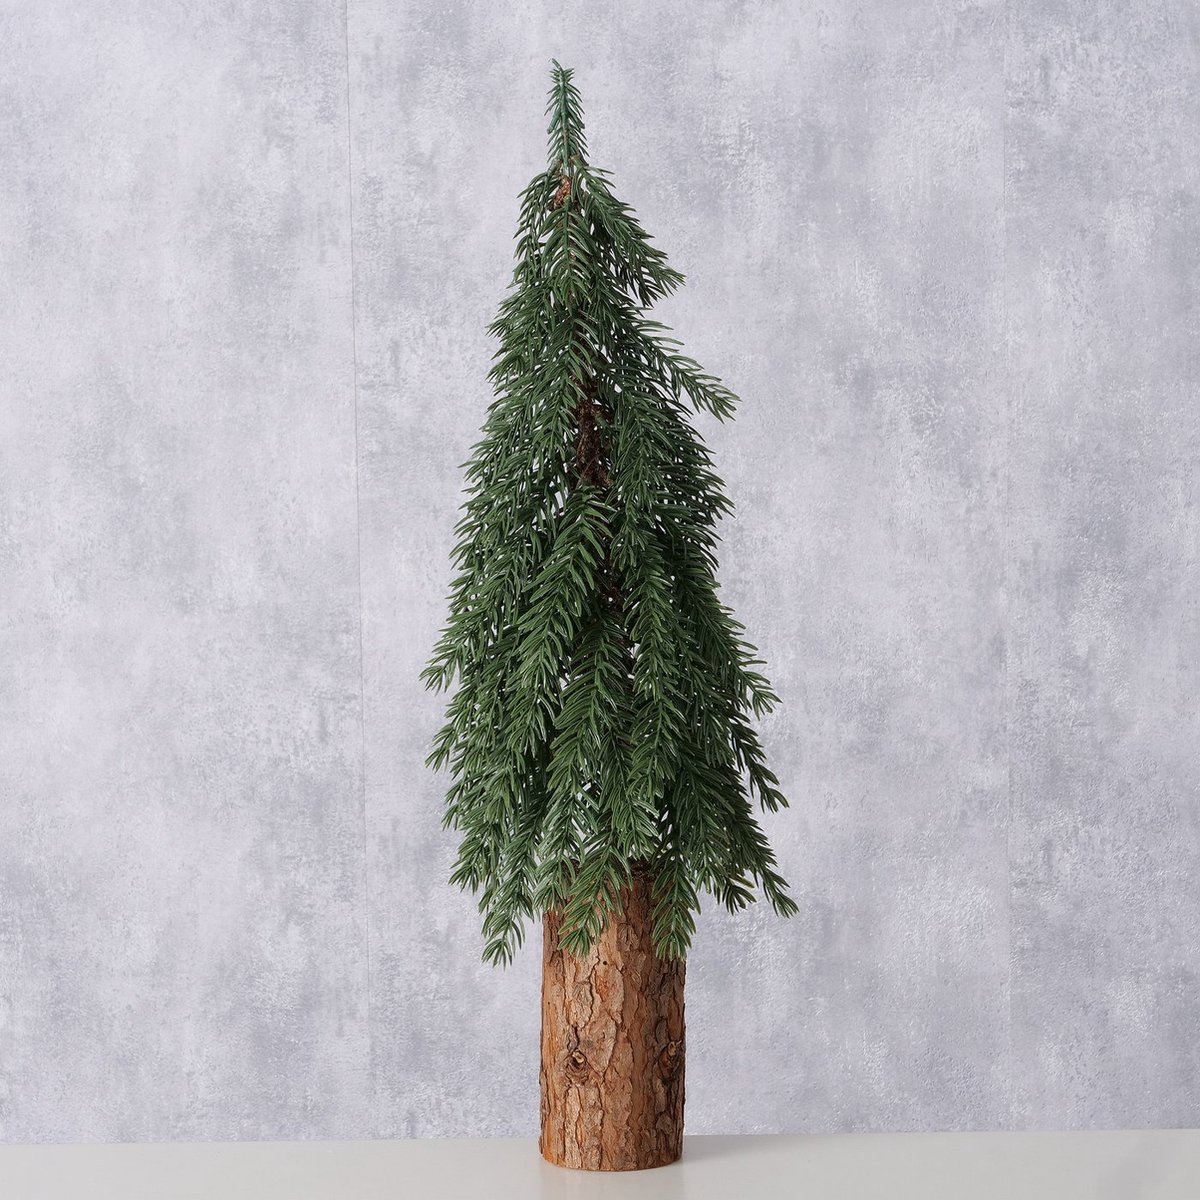 Mini kunst kerstboom op houten voet 56 cm hoog 18 cm diameter groen